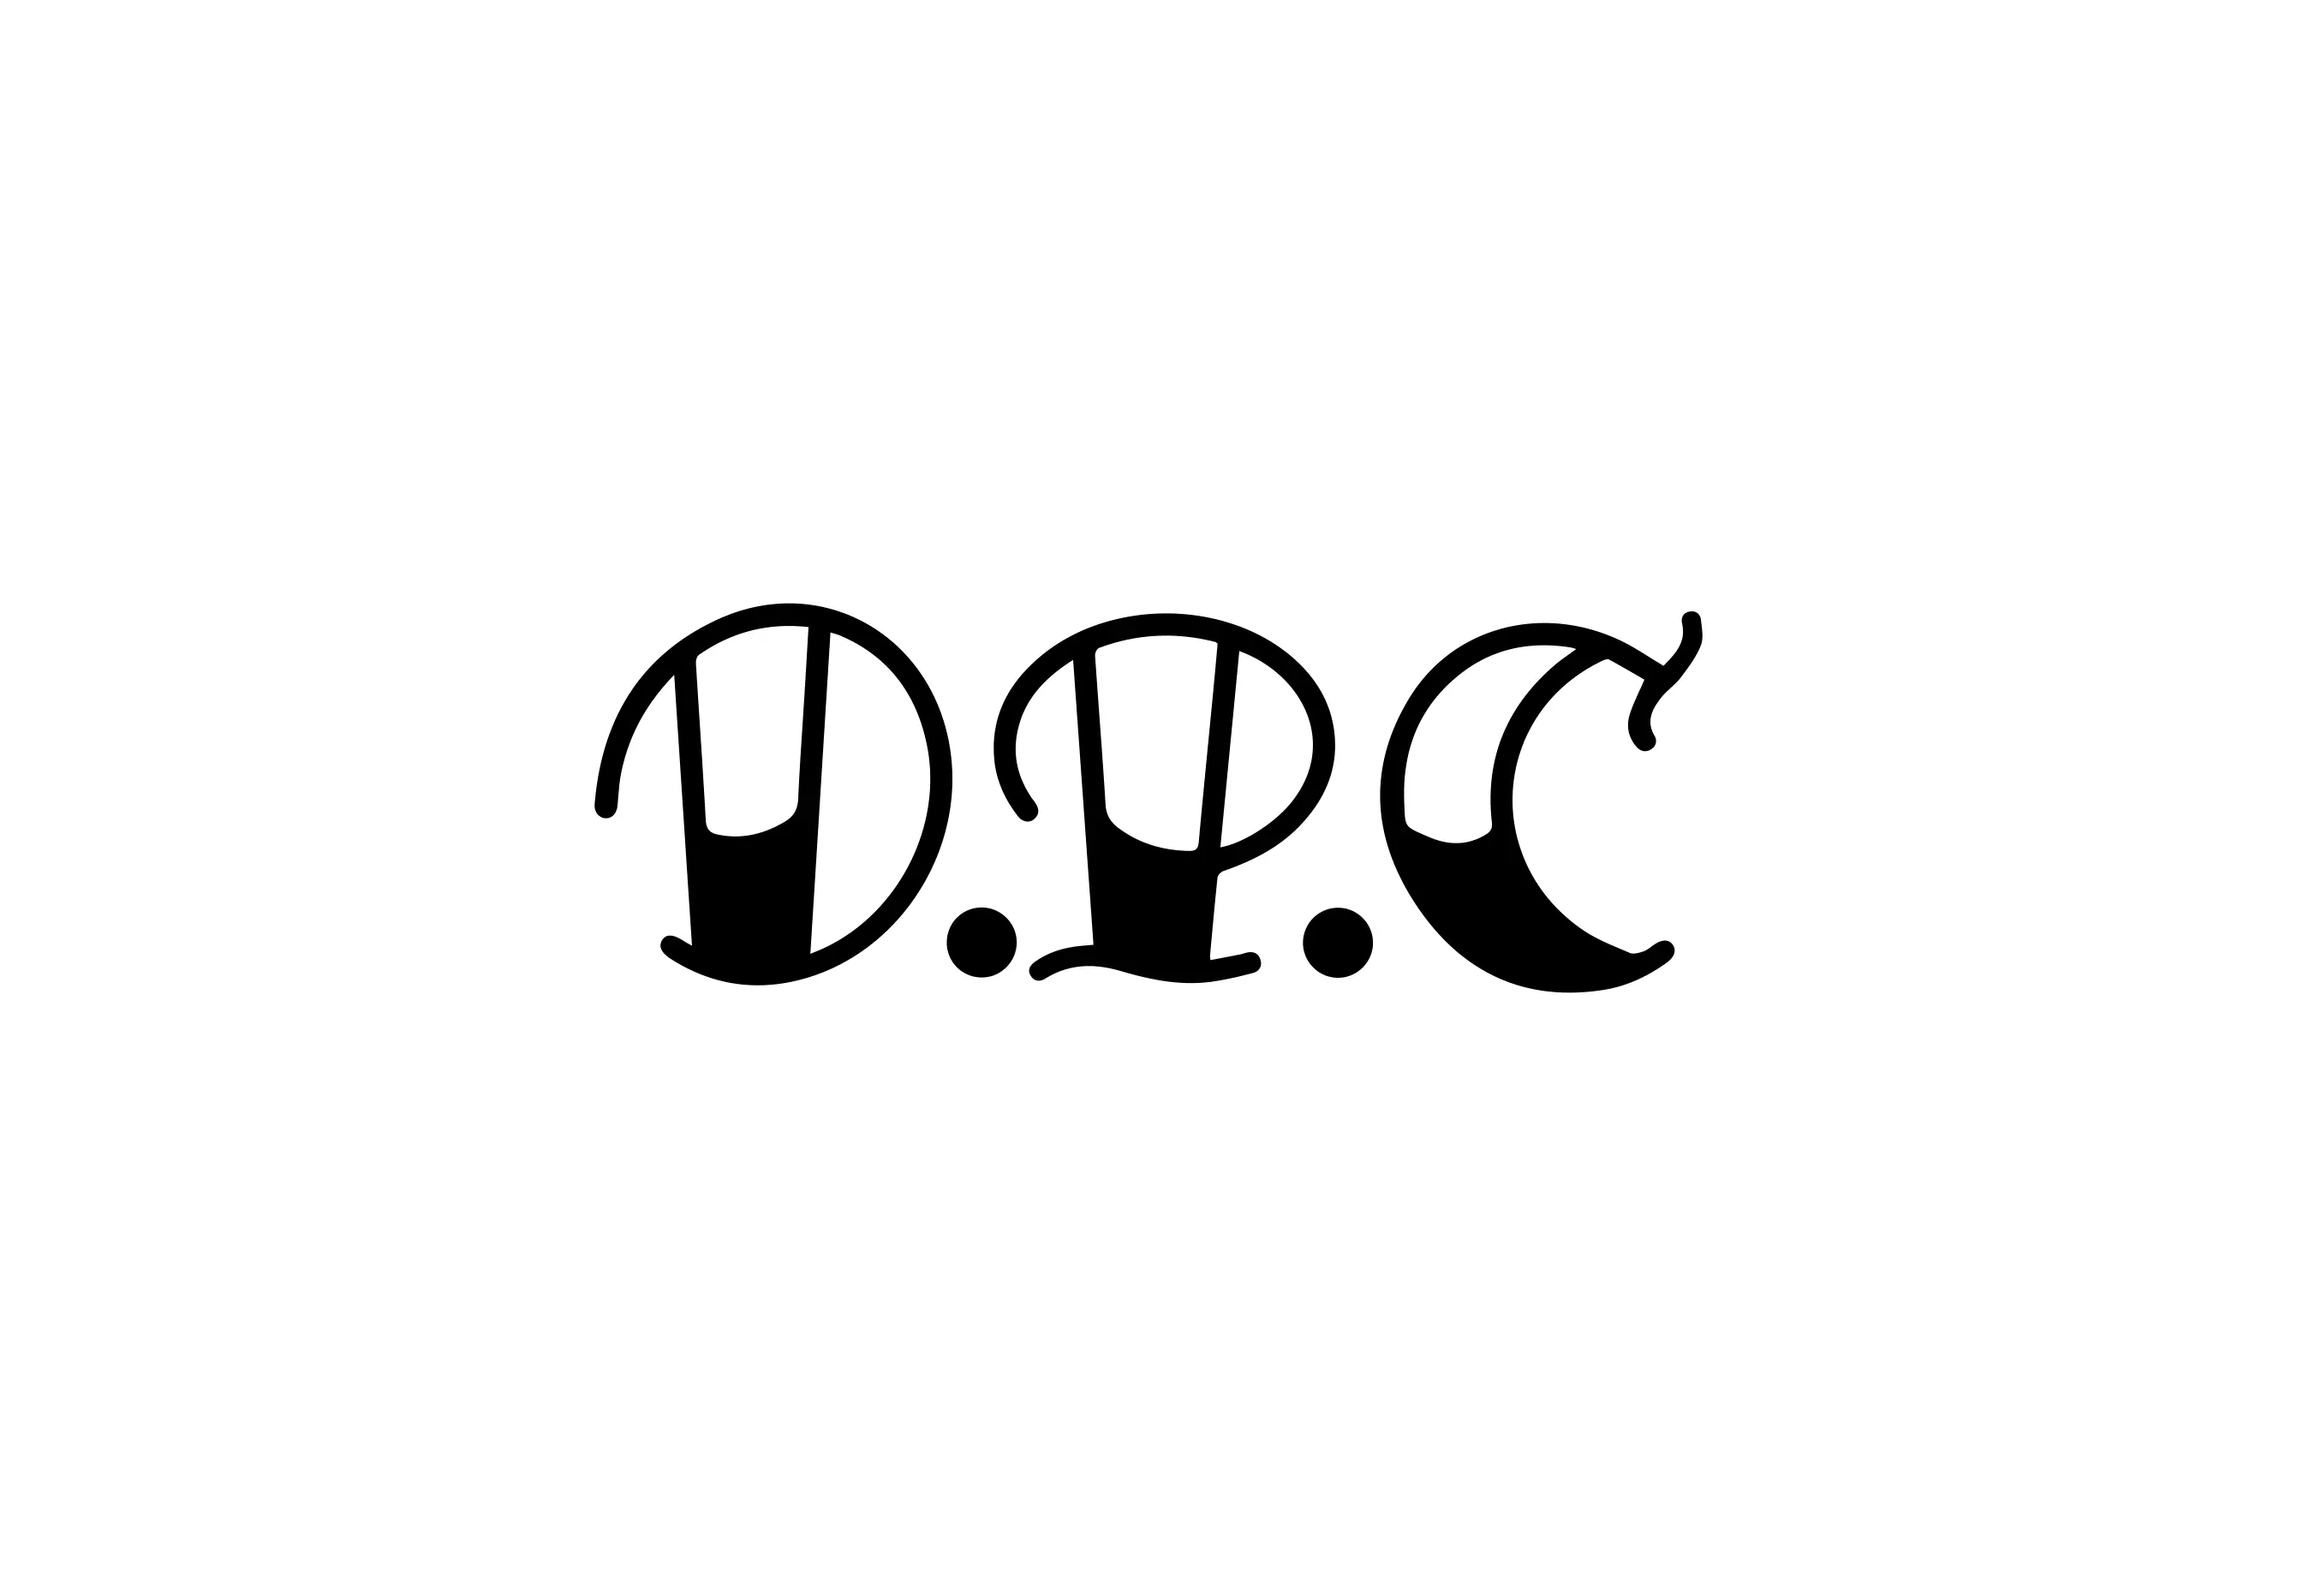 D.P.C